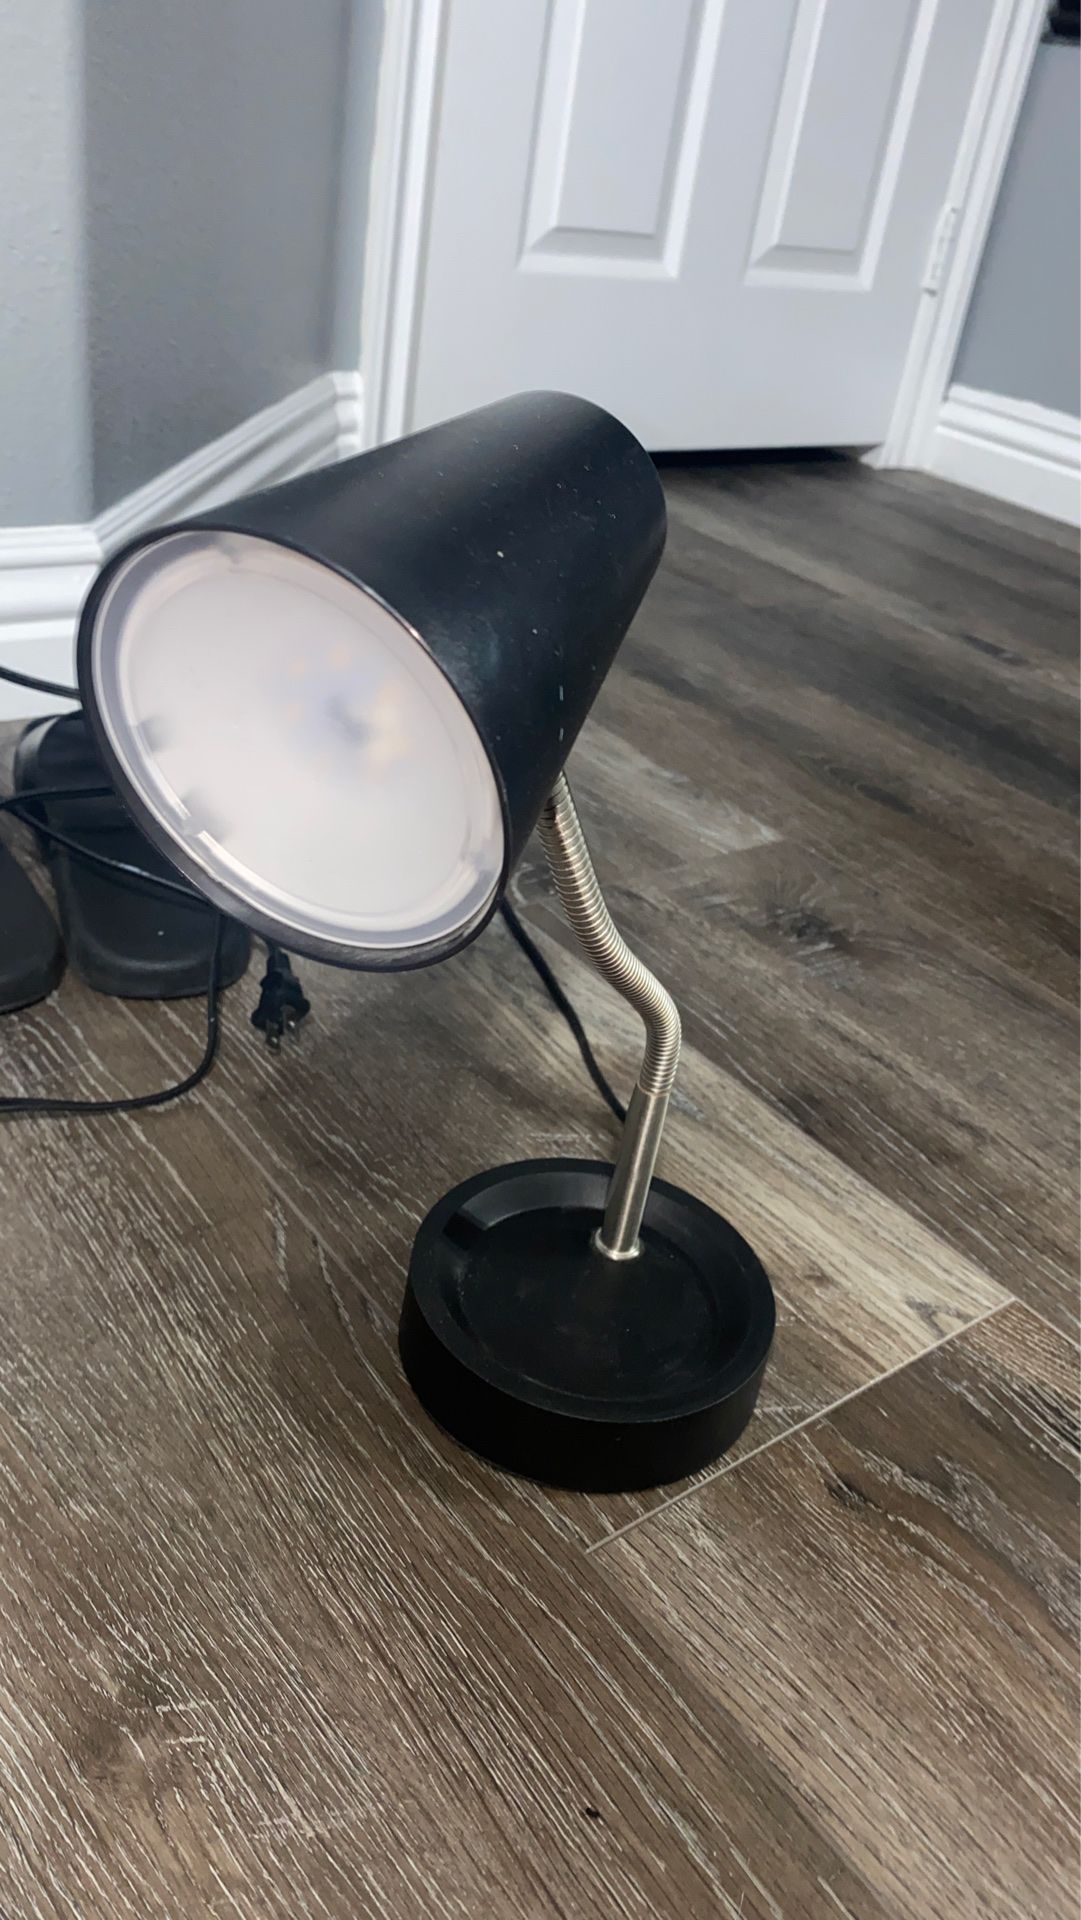 Desk lamp with adjustable stem